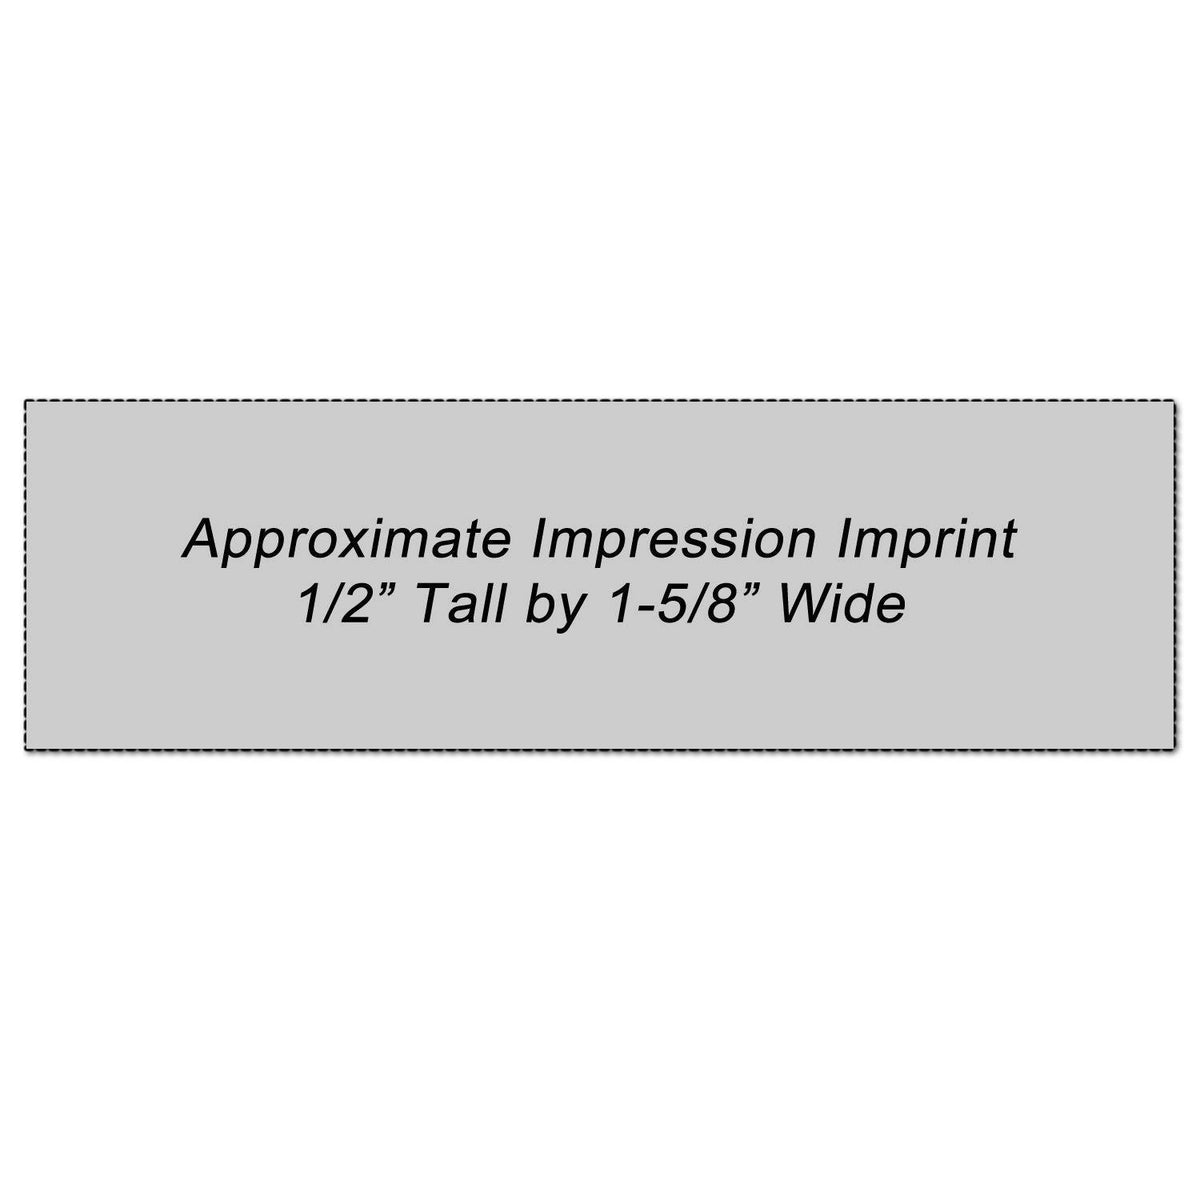 Two-color File Copy Xstamper Stamp Impression Size